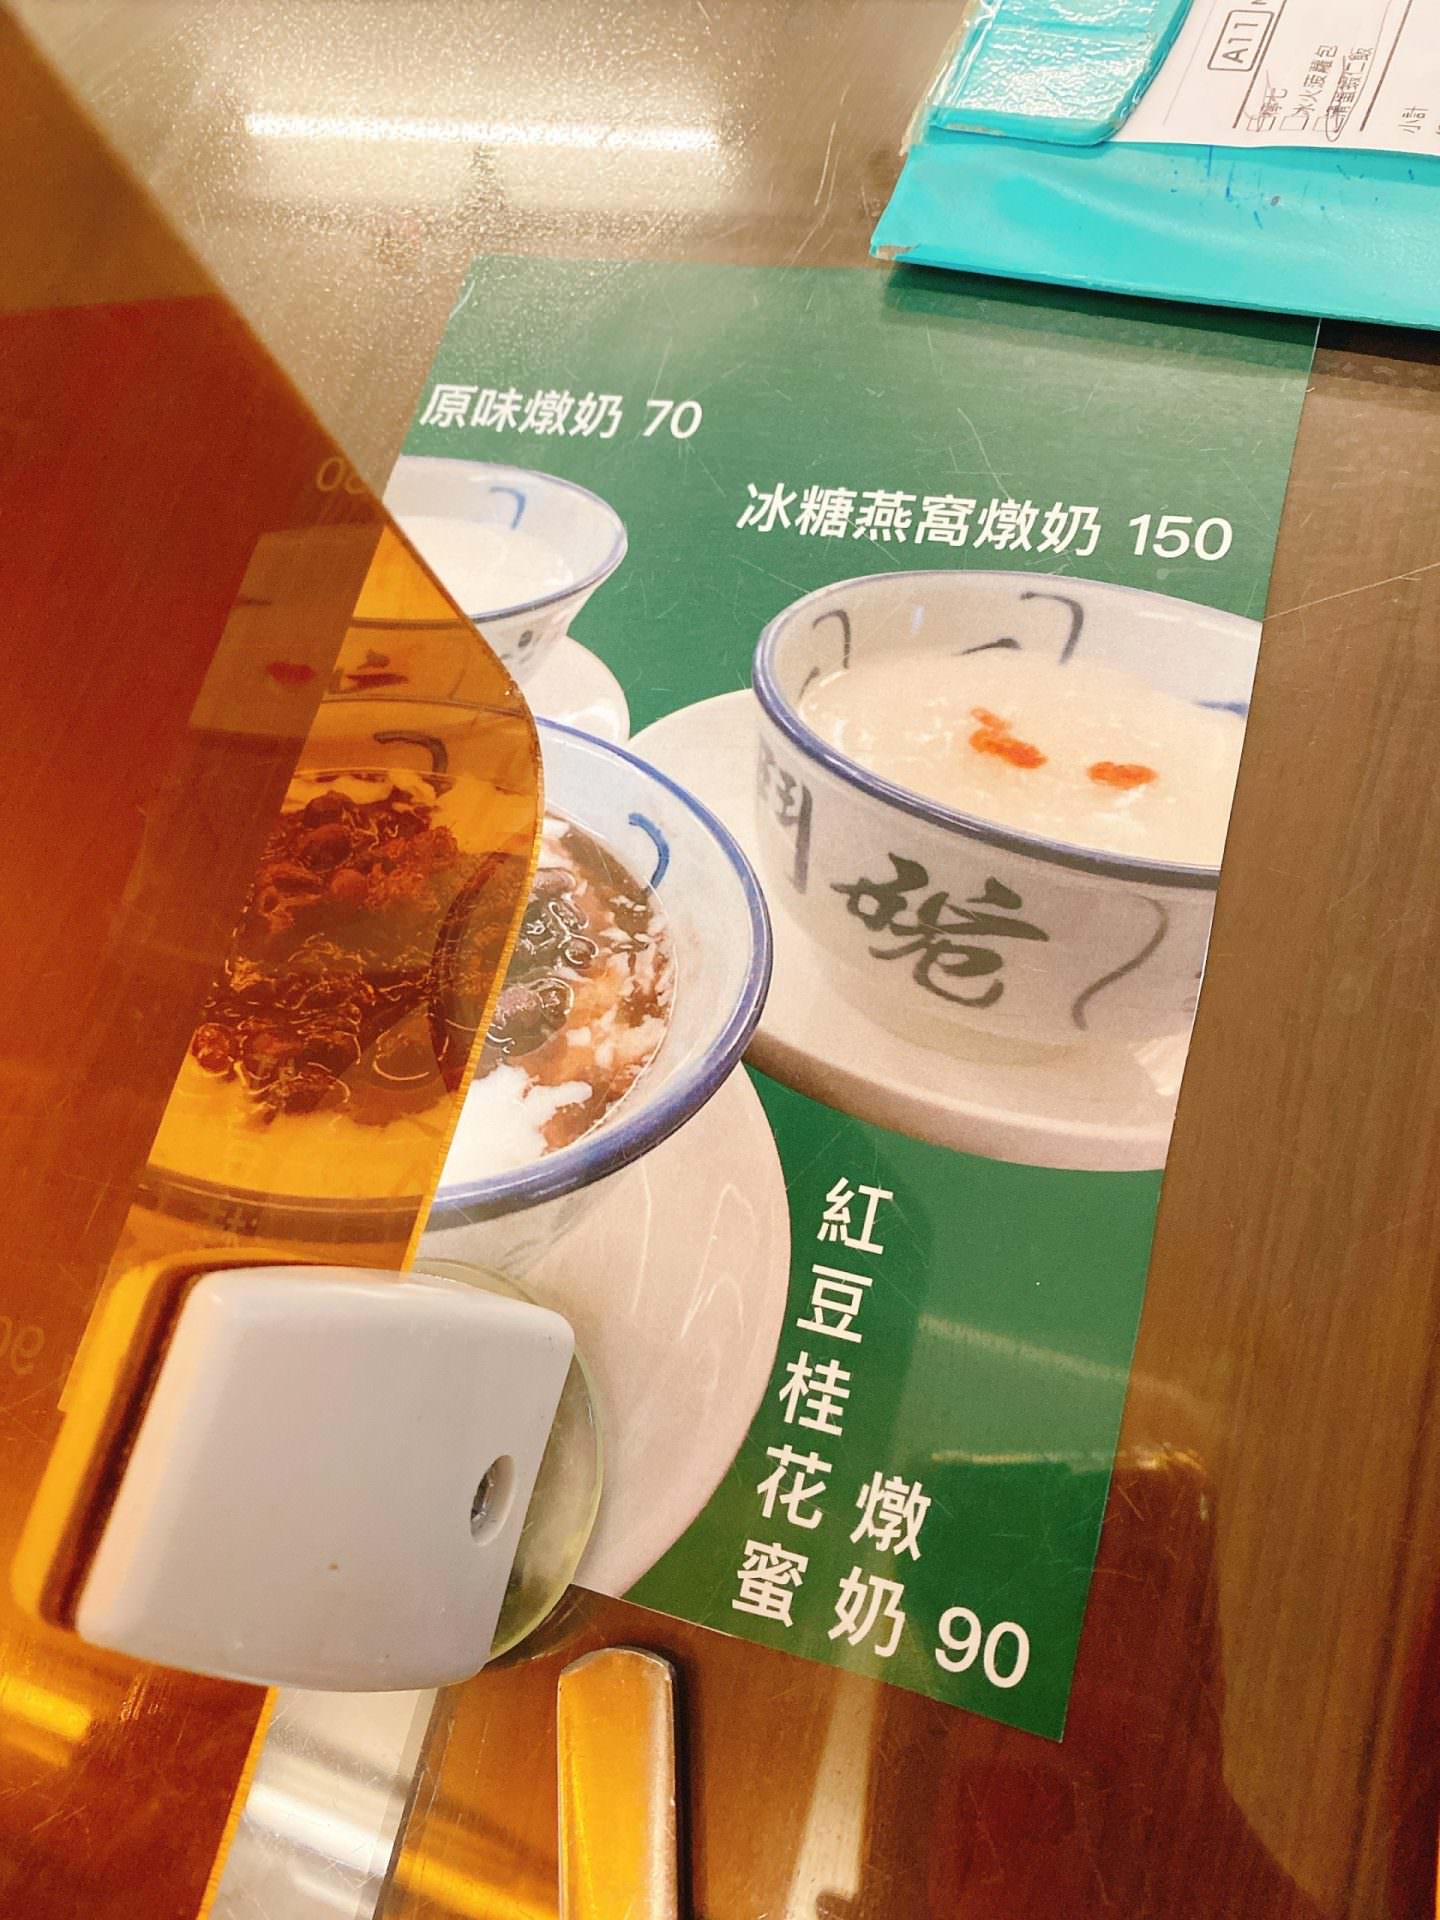 【食記】台北松山【香港特別行運冰室】港式茶餐廳料理美食、近捷運南京復興站